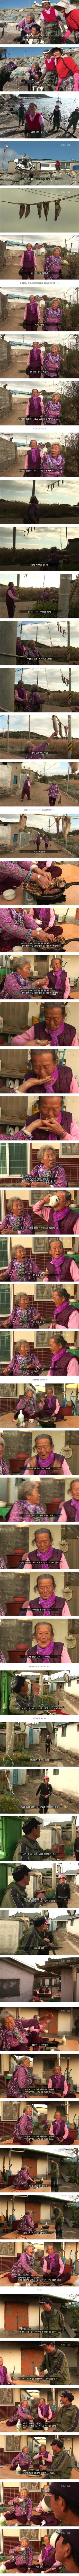 nokbeon.net-우울할때 보면 좋은 할머니-1번 이미지